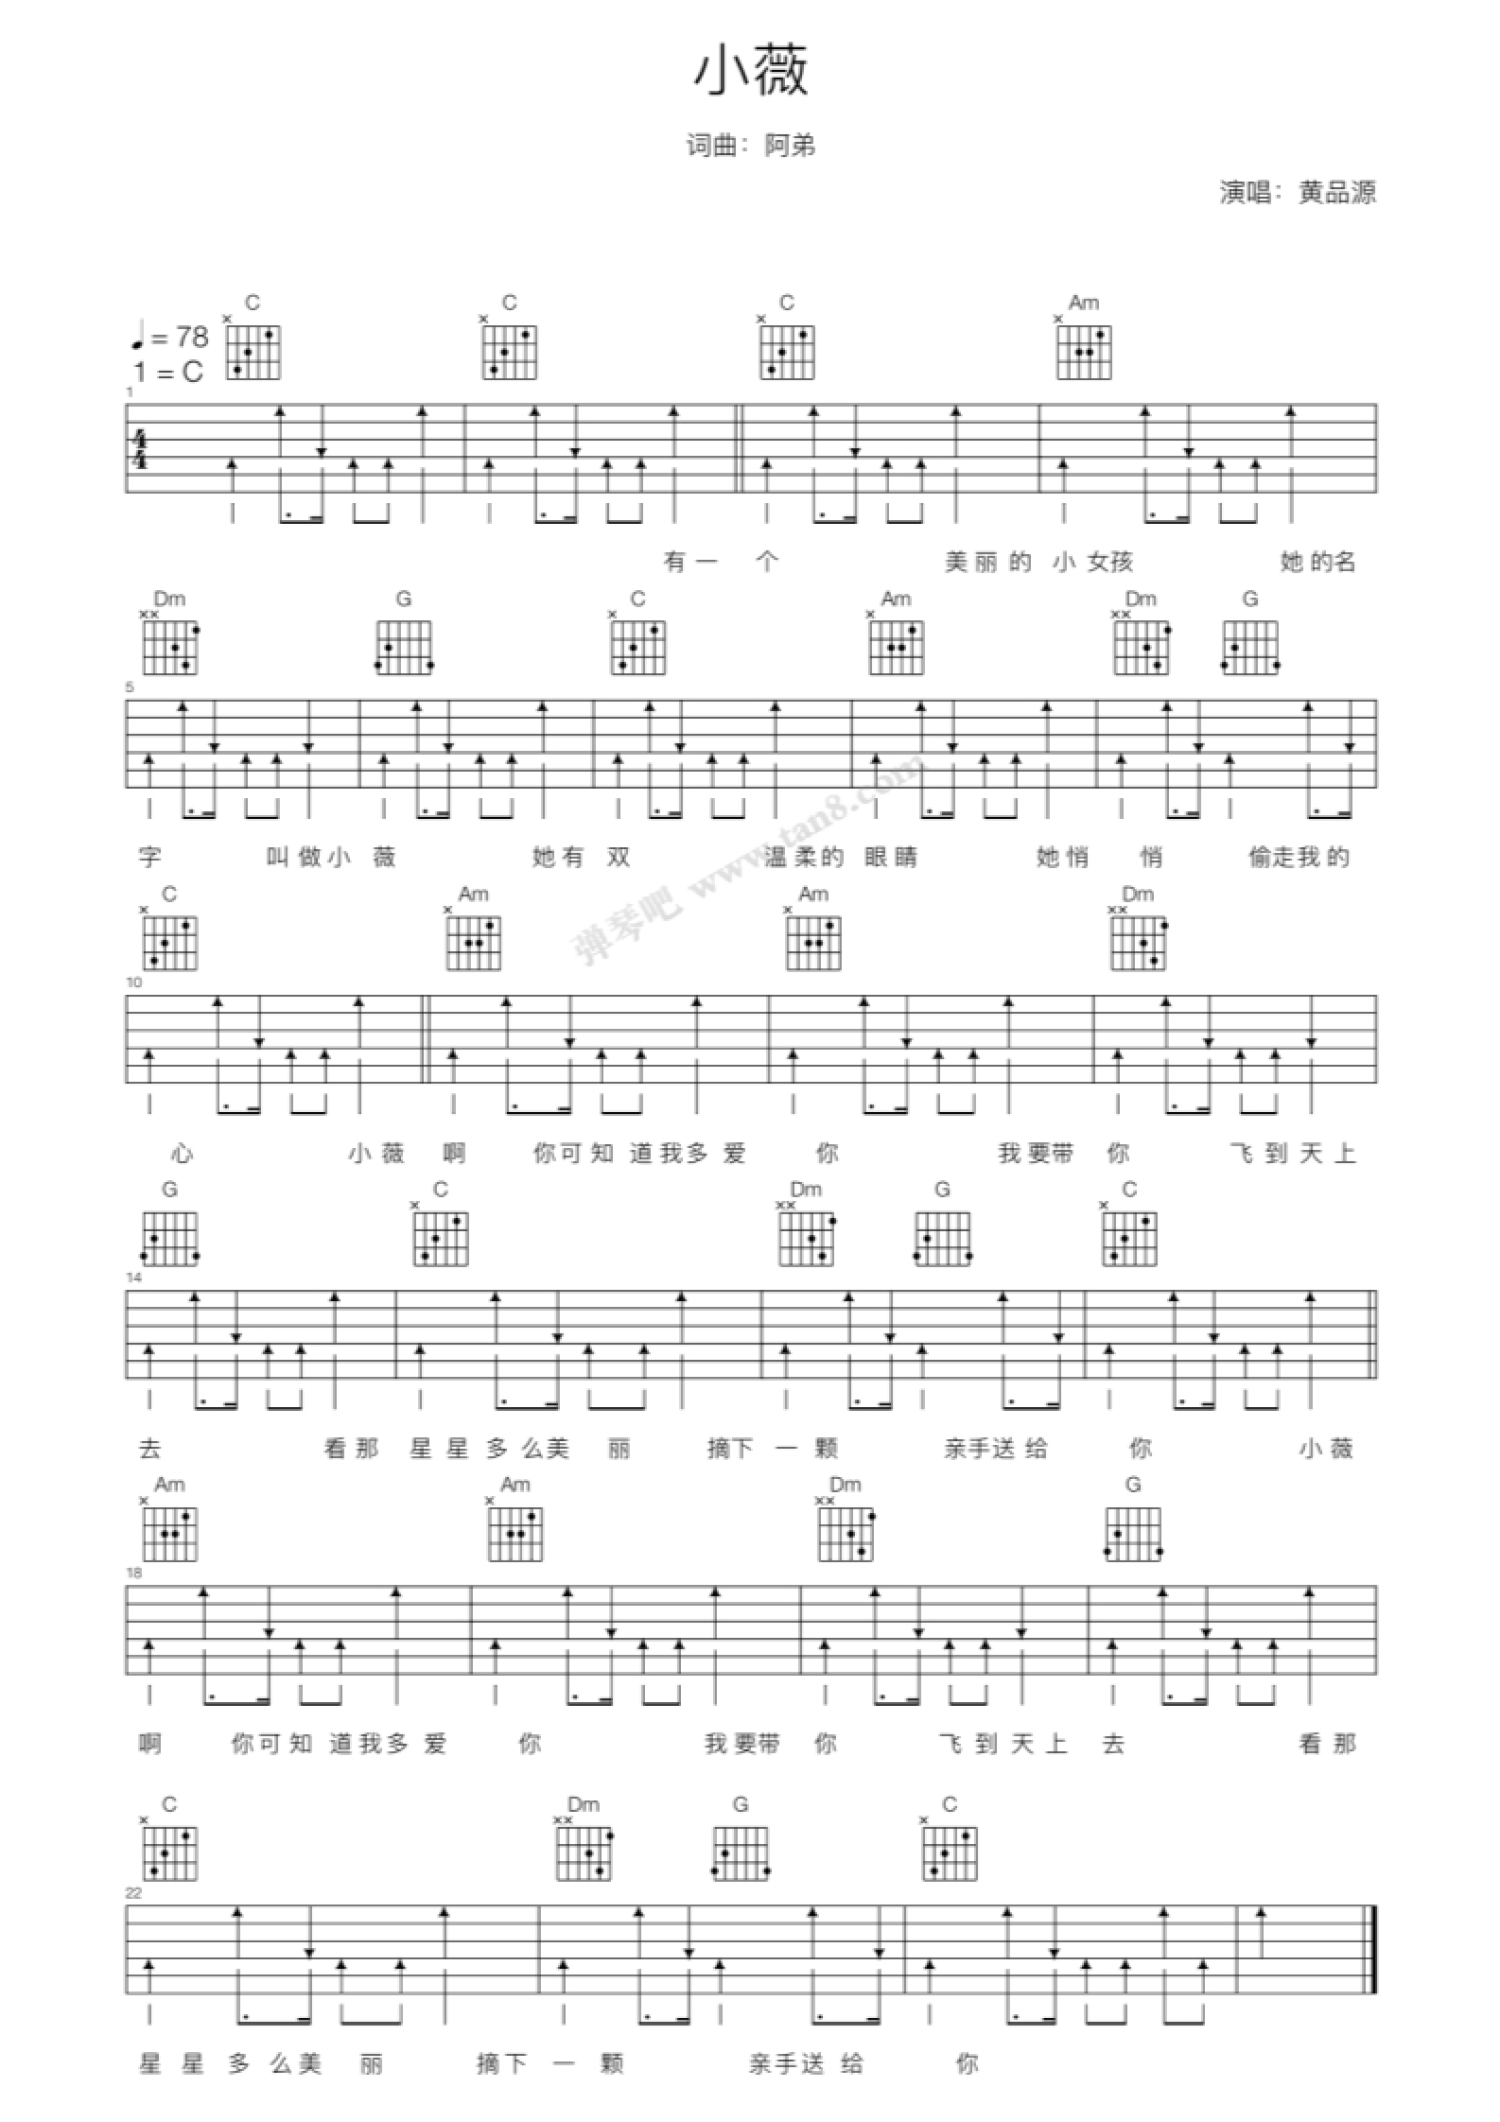 9-3吉他弹唱《小薇》【福艺吉他弹唱入门课程2.0版】 - 嗨吉他